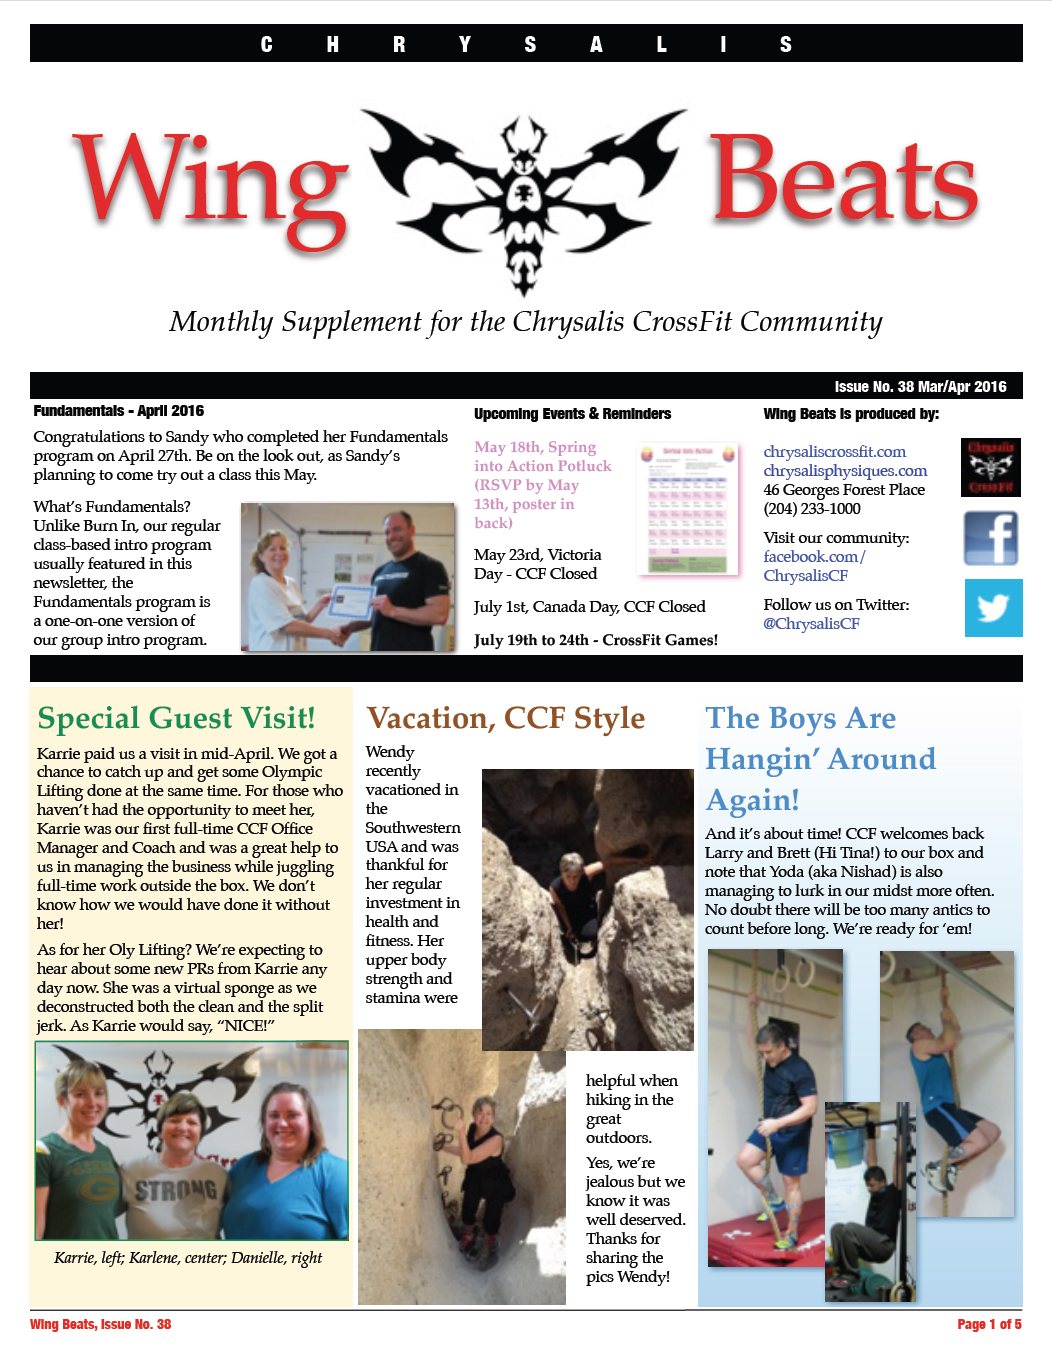 WingBeats Issue #38 - MarApr 2016